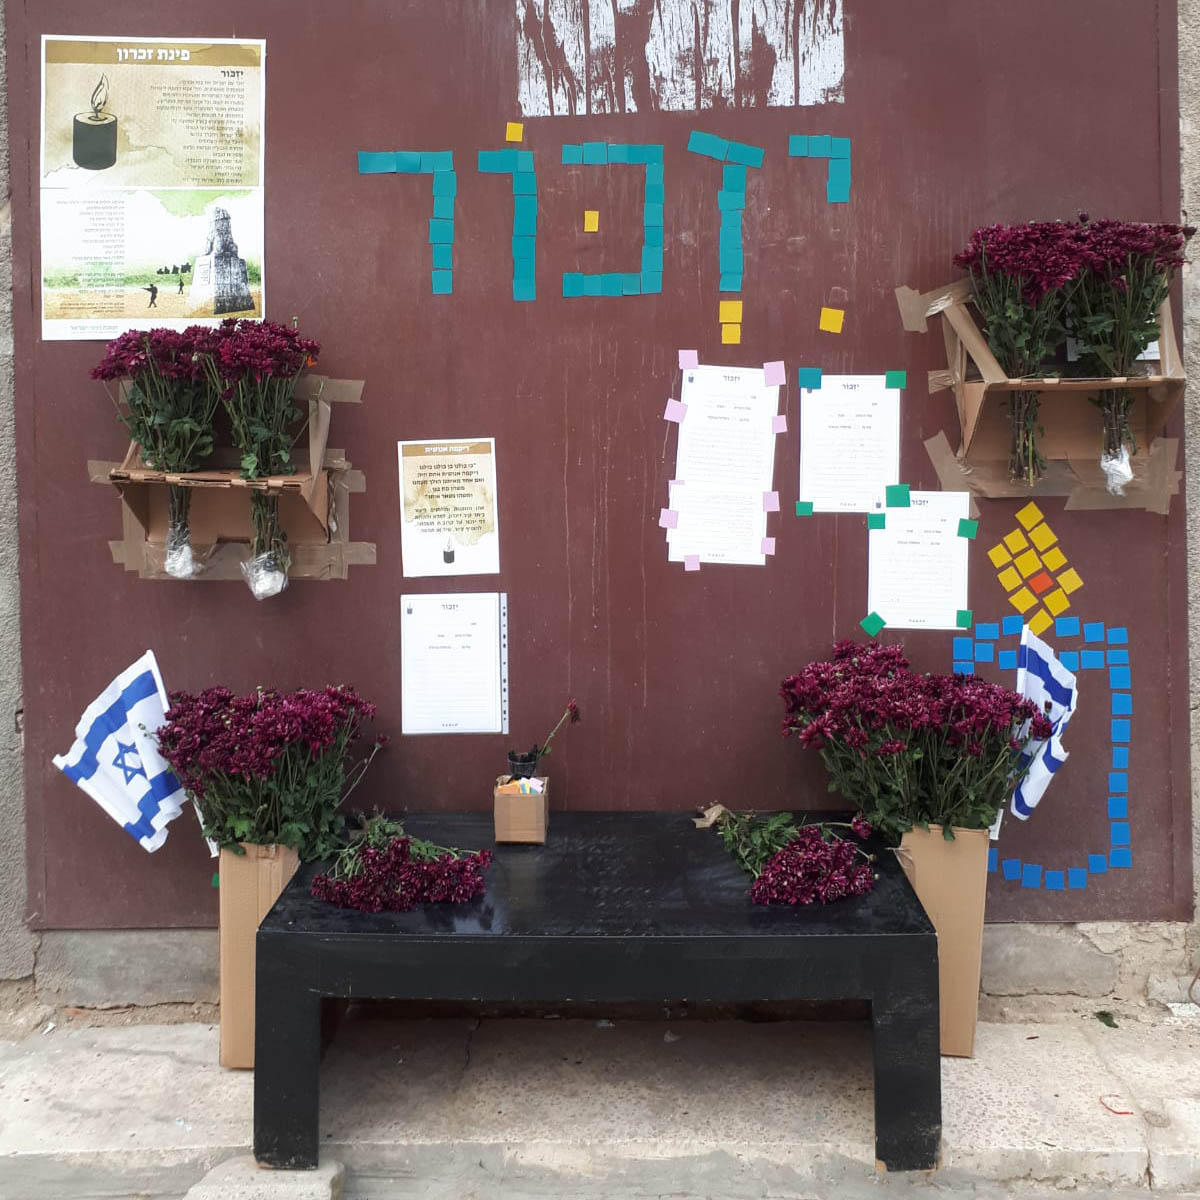 פינת זיכרון לנופלים בפתח בניין בבאר שבע (תנועת דרור ישראל)